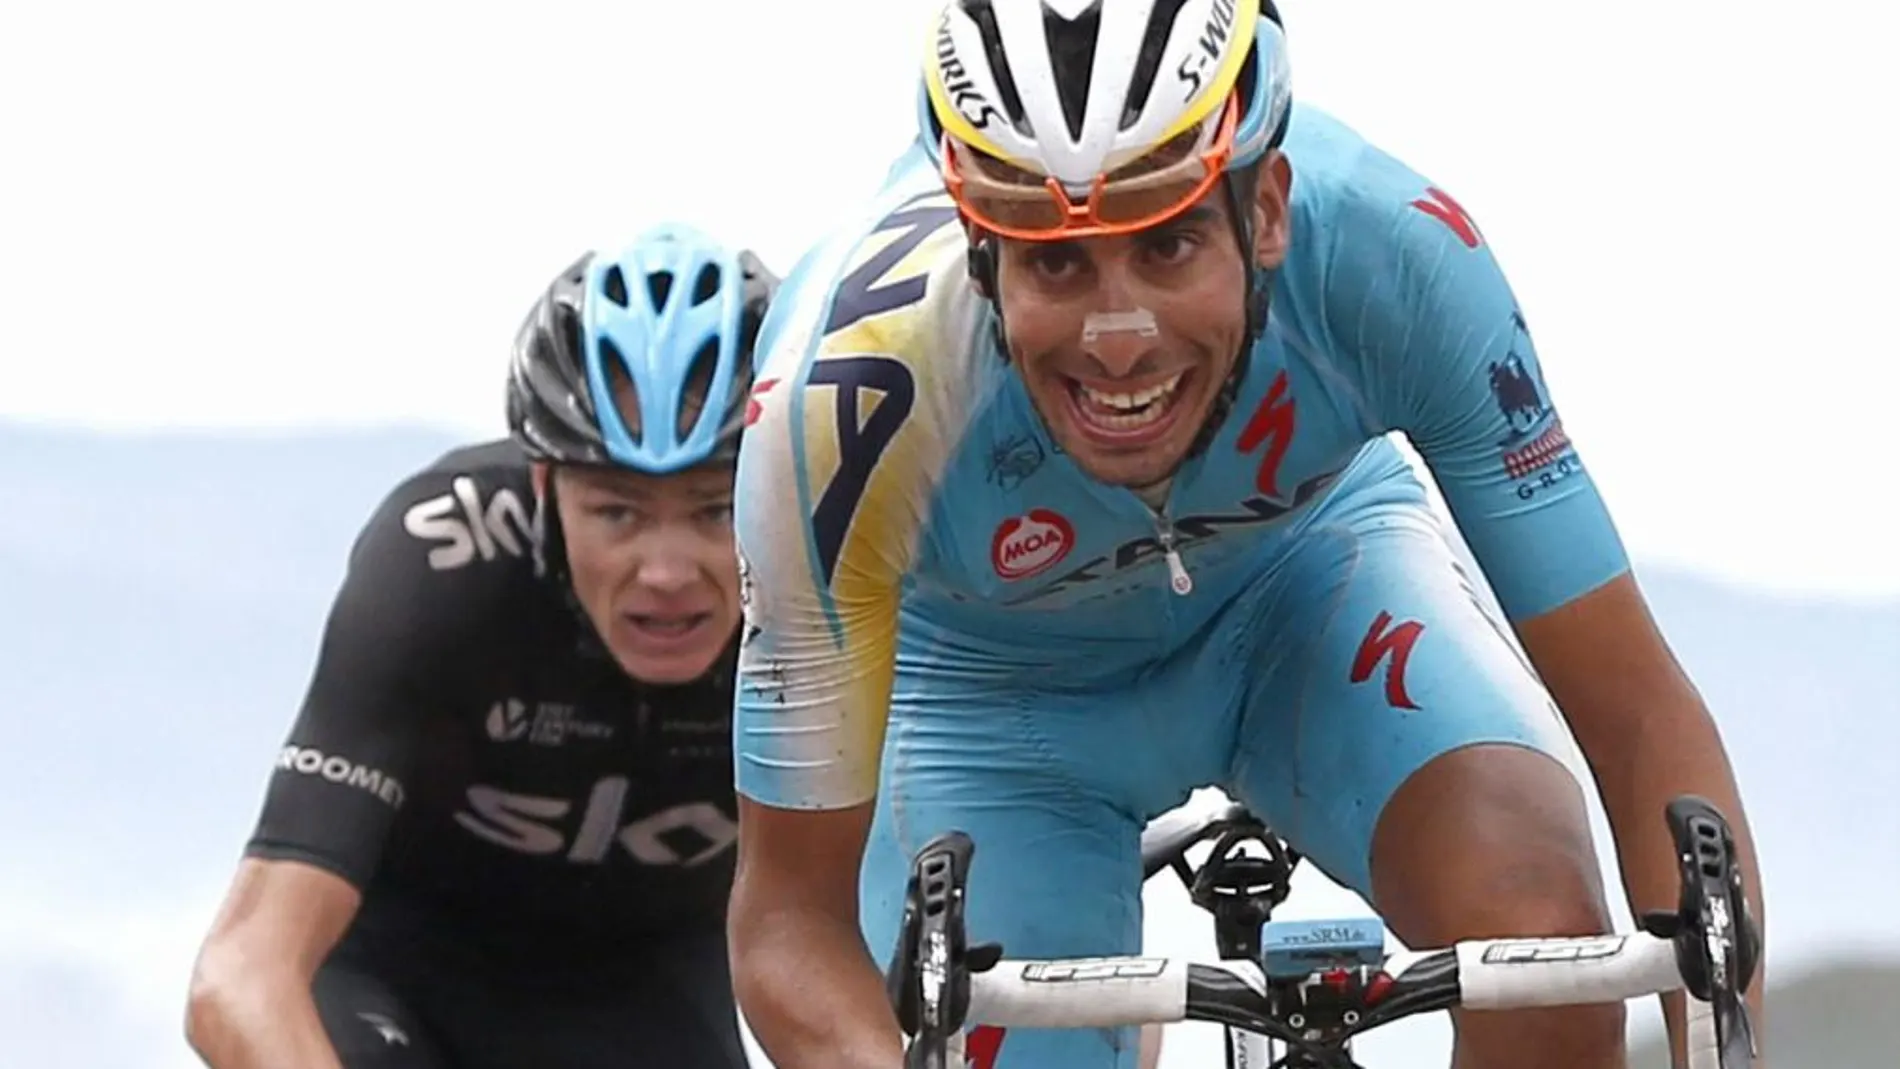 El ciclista italiano del equipo Astana, Fabio Aru, el británico del equipo Sky, Christopher Froome